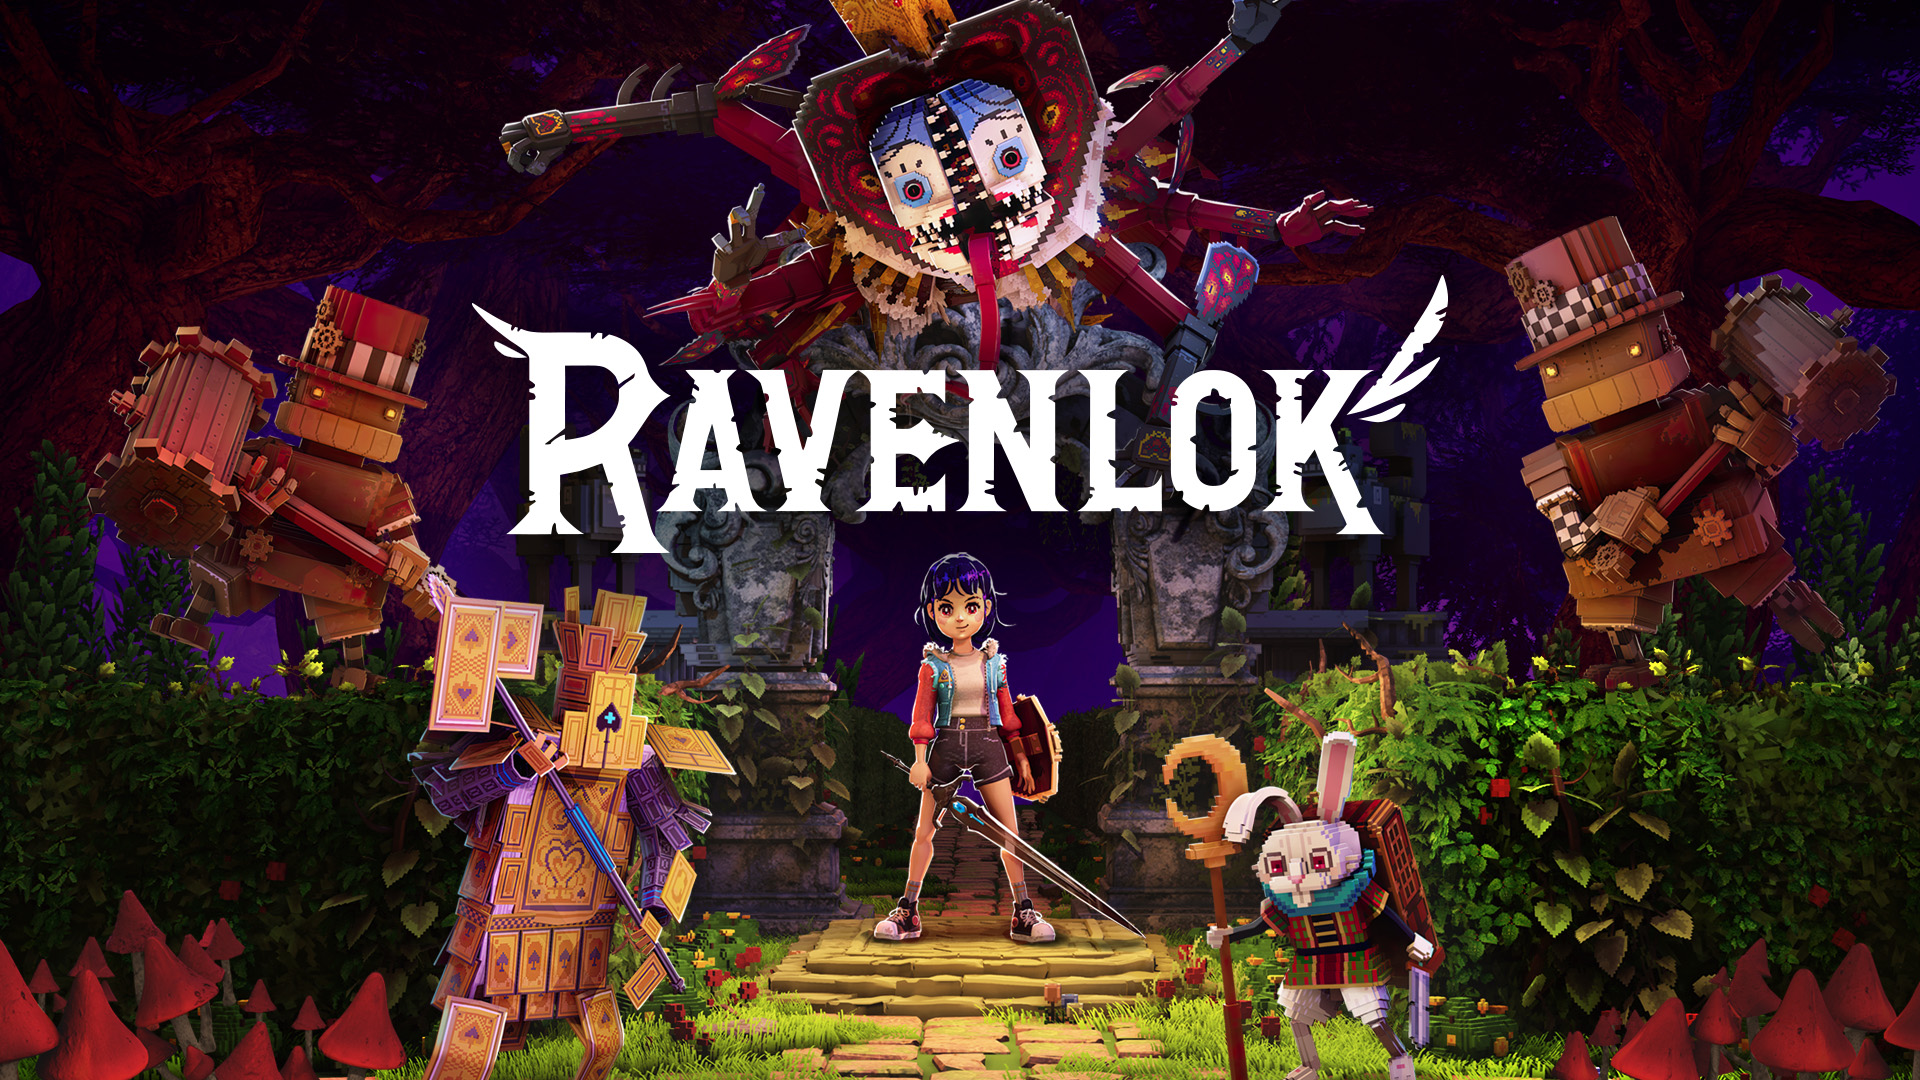 The key art for Ravenlok.